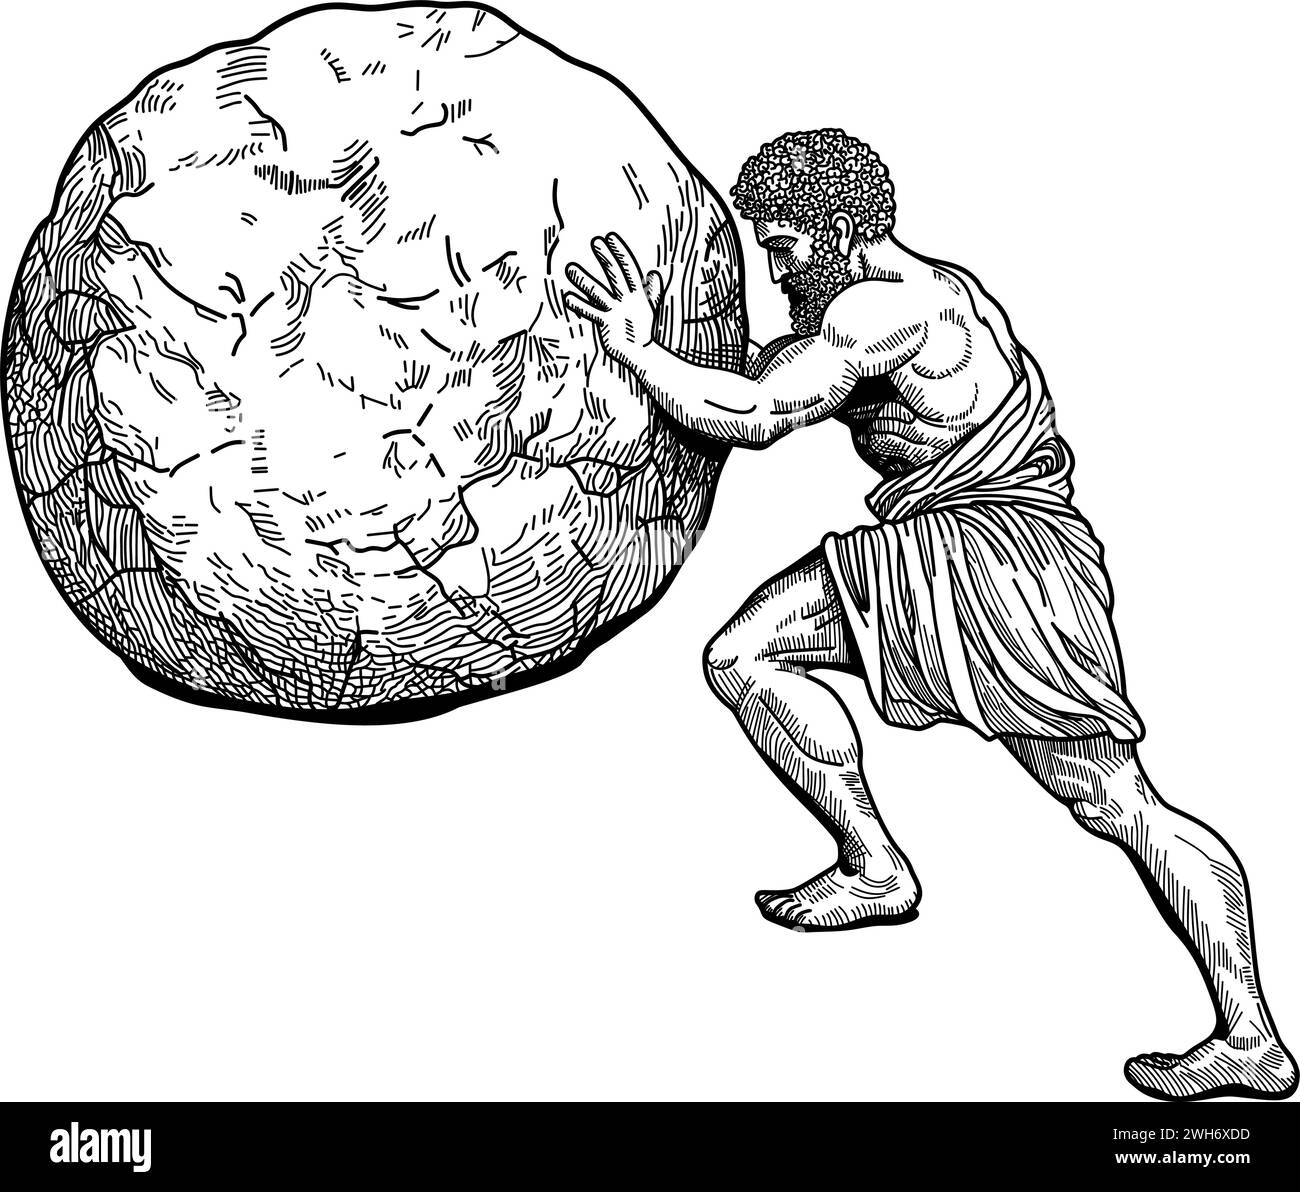 Ein Mann in altgriechischer Kleidung rollt einen großen runden Stein nach oben Stock Vektor